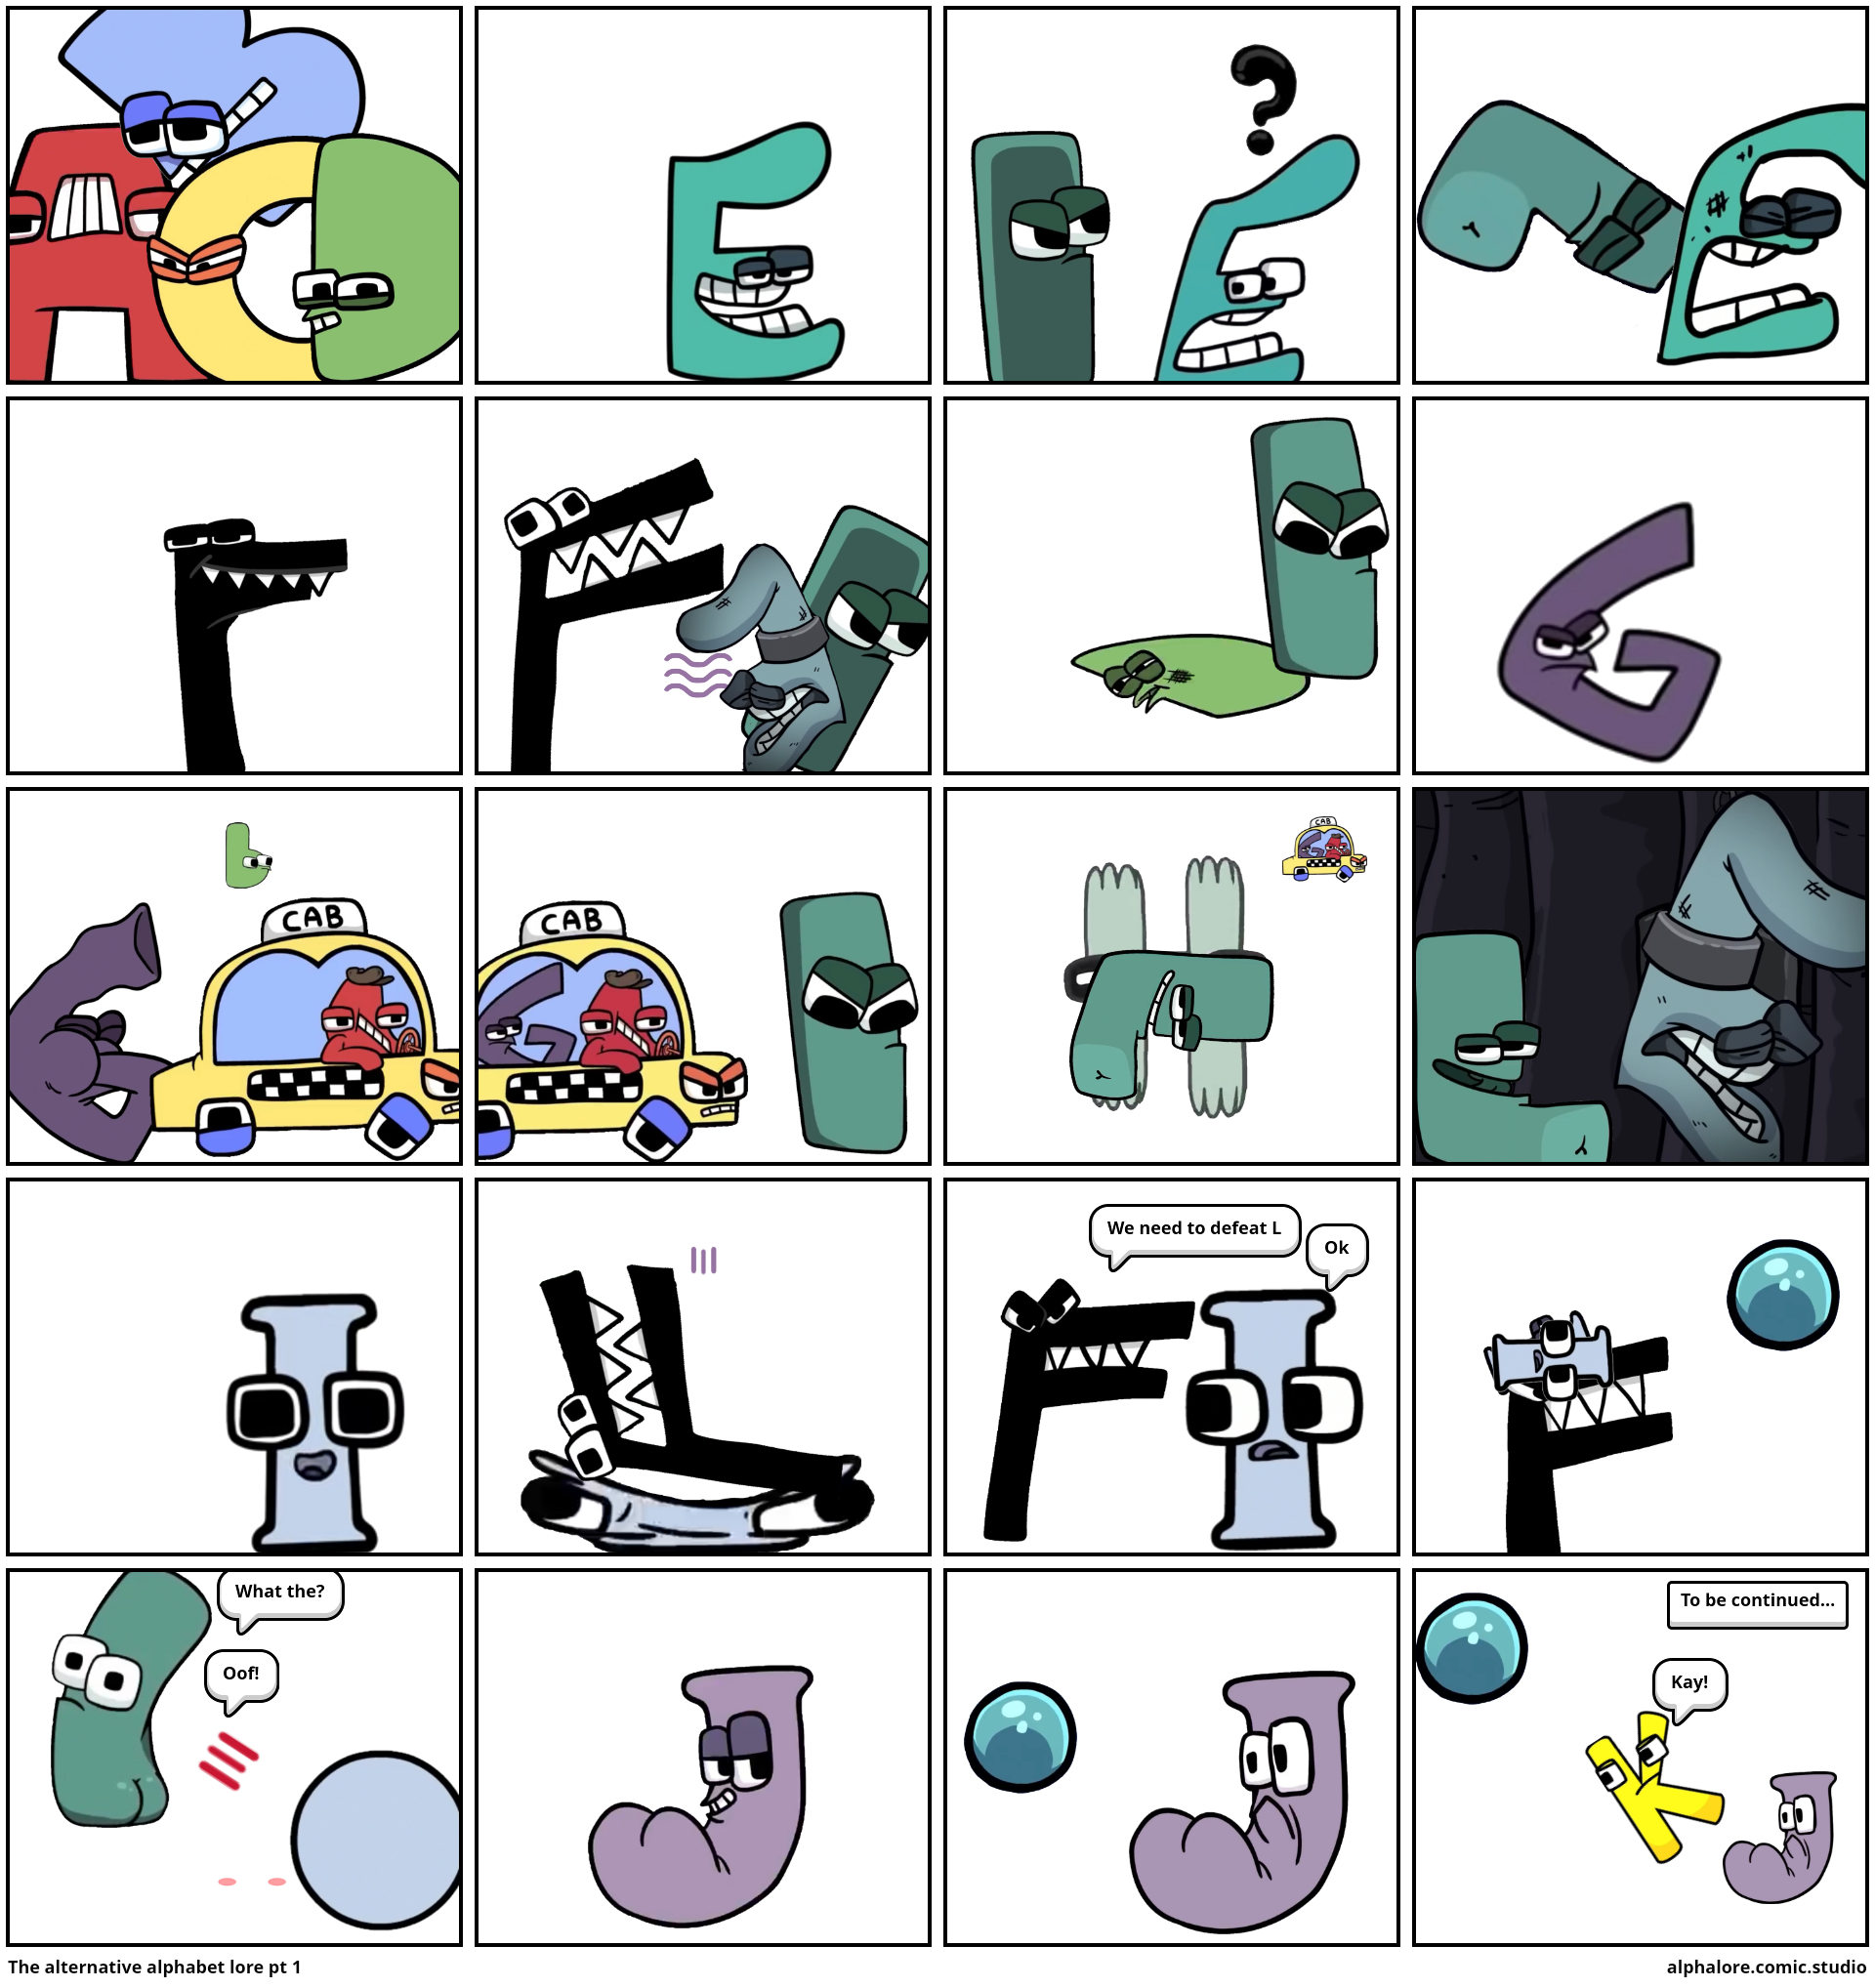 Alphabet Lore I Guess - Part 1 - Comic Studio